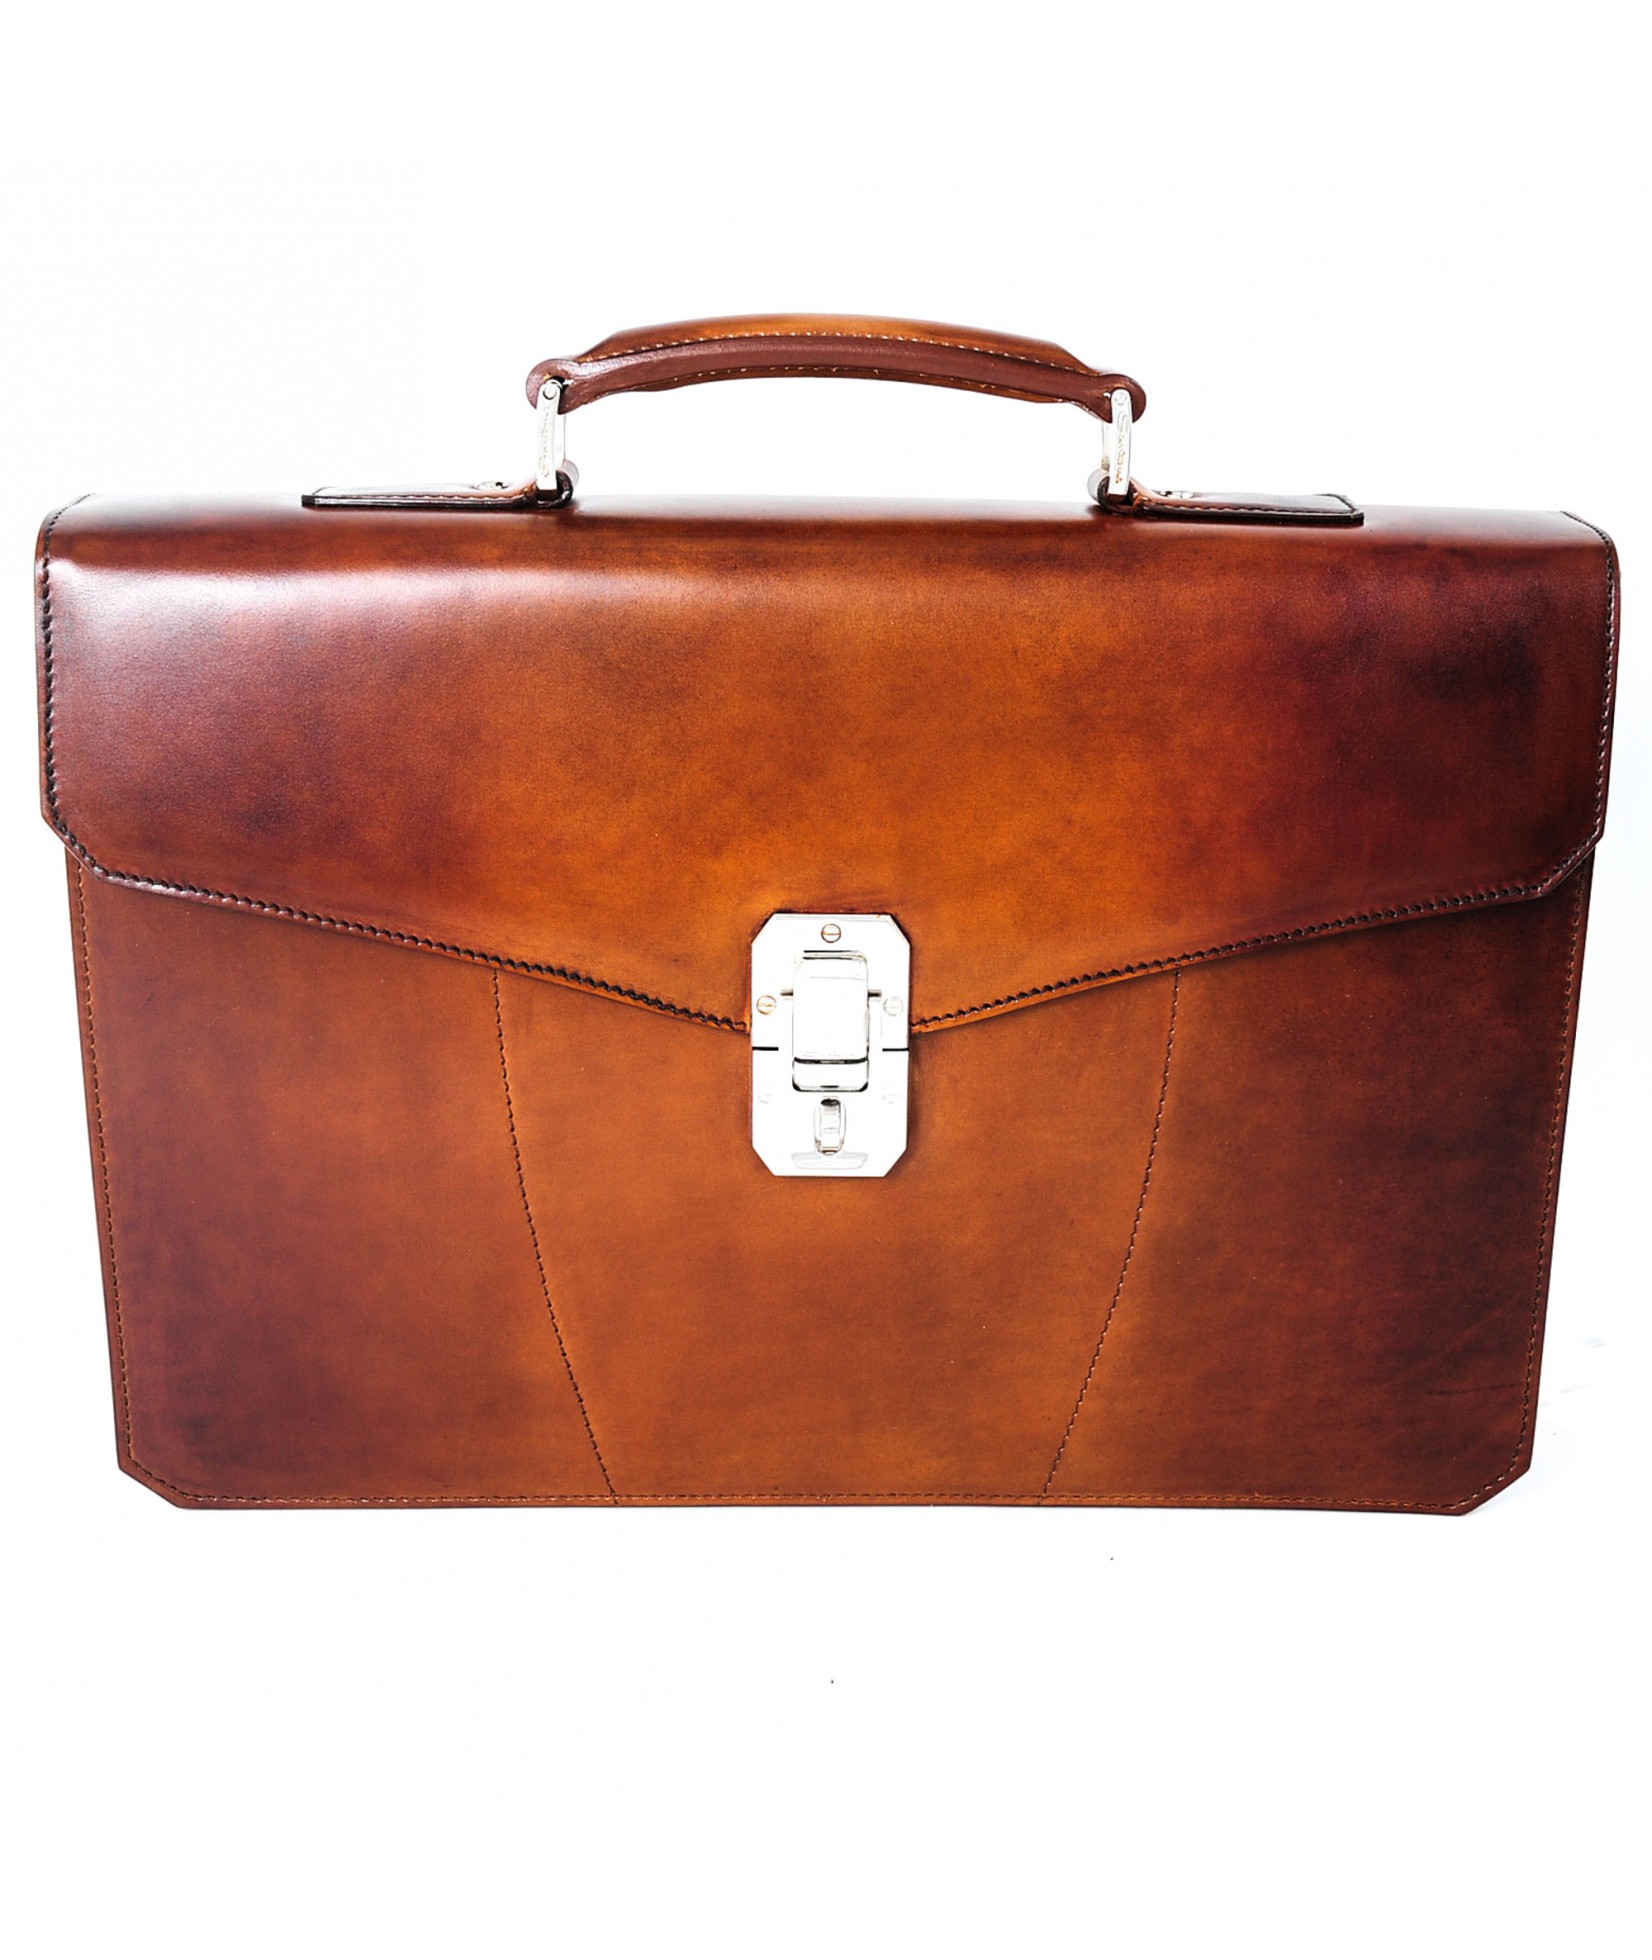 Santoni Briefcase Bag Cognac M50 (28097)